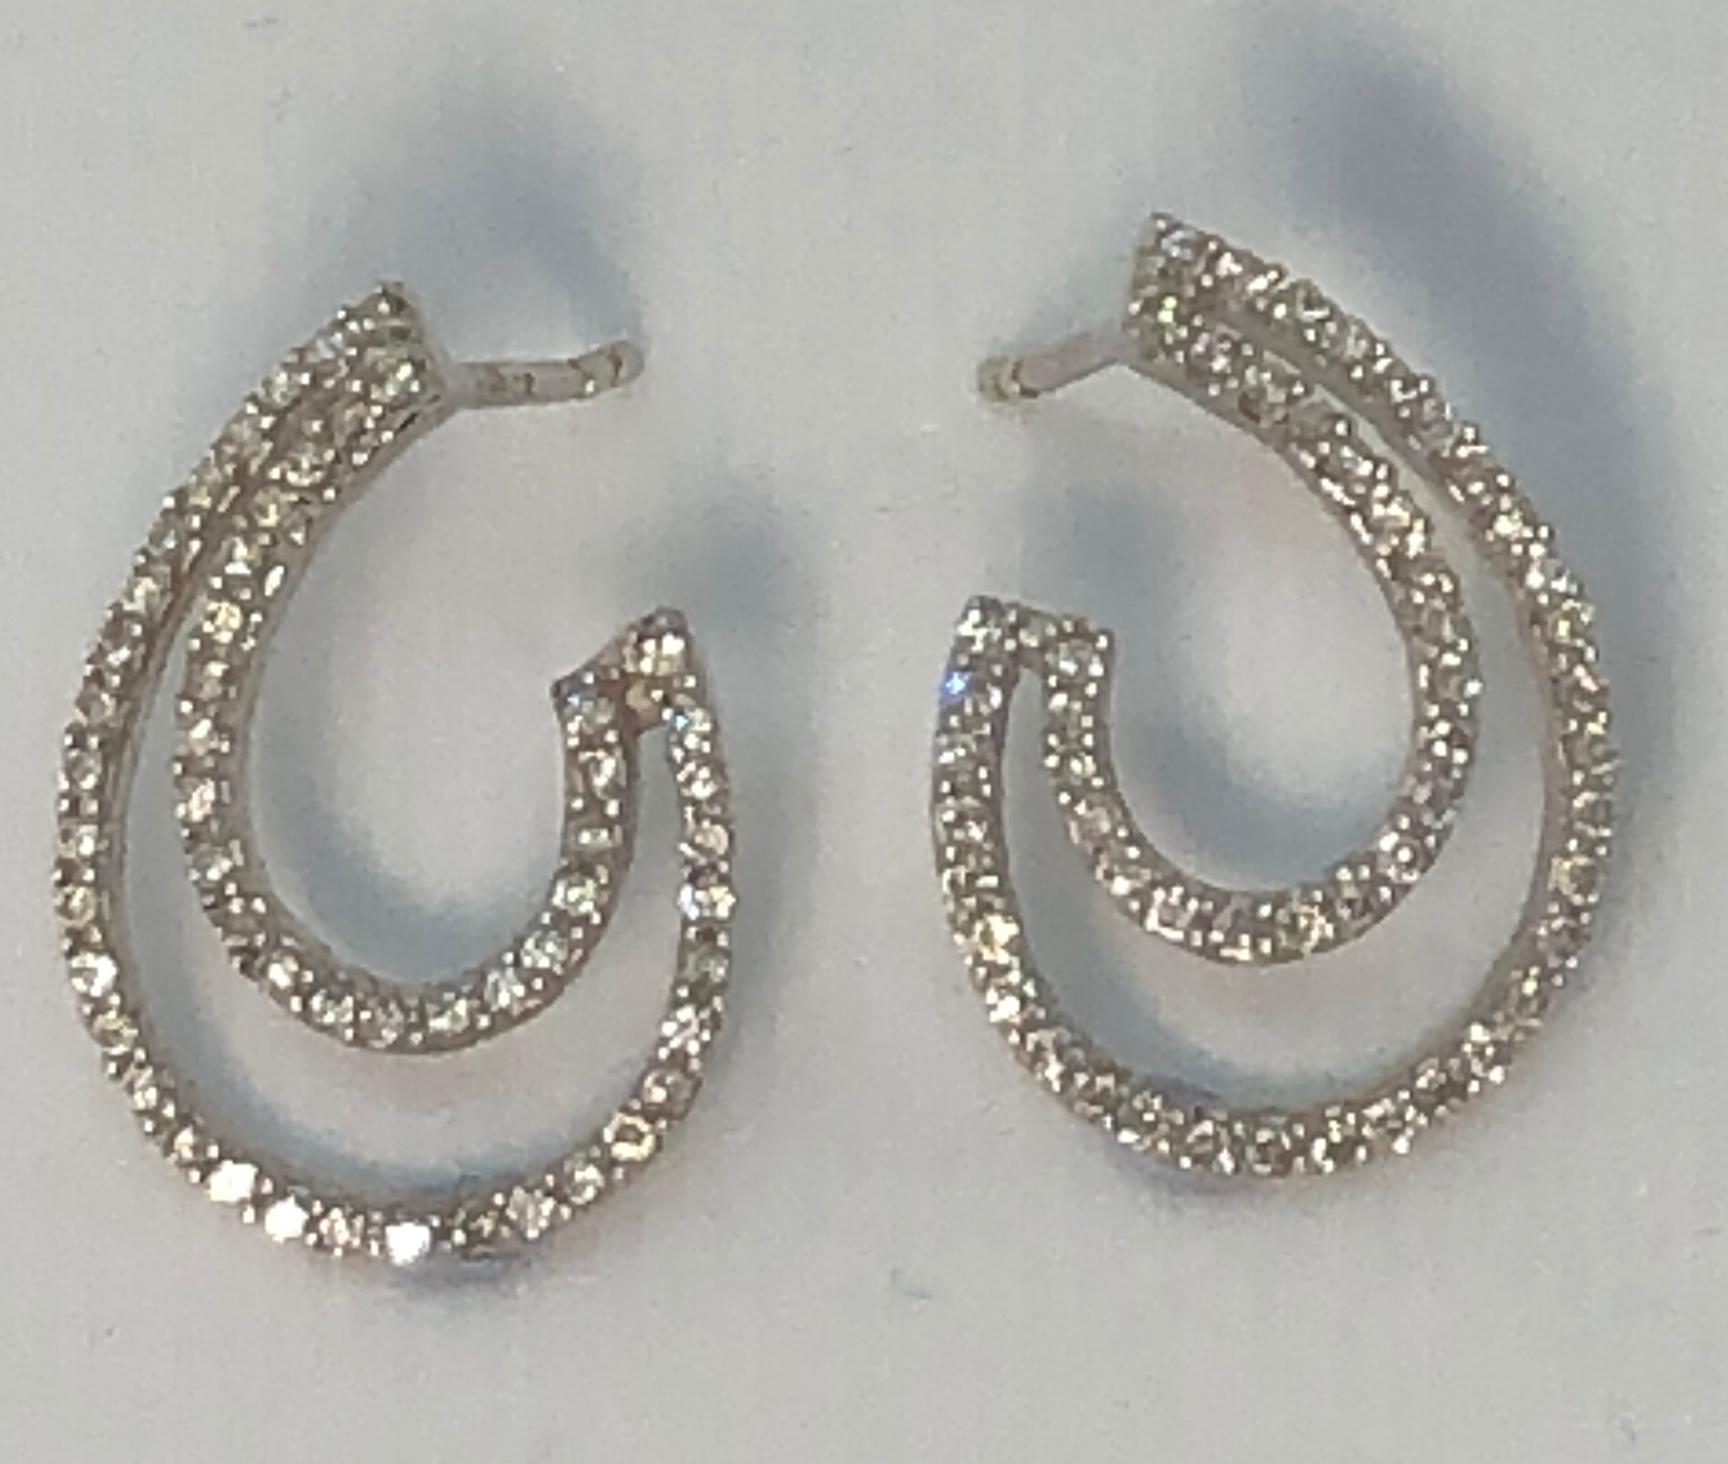 Brilliant Cut Diamond Swirl Earrings in 18 Karat White Gold For Sale